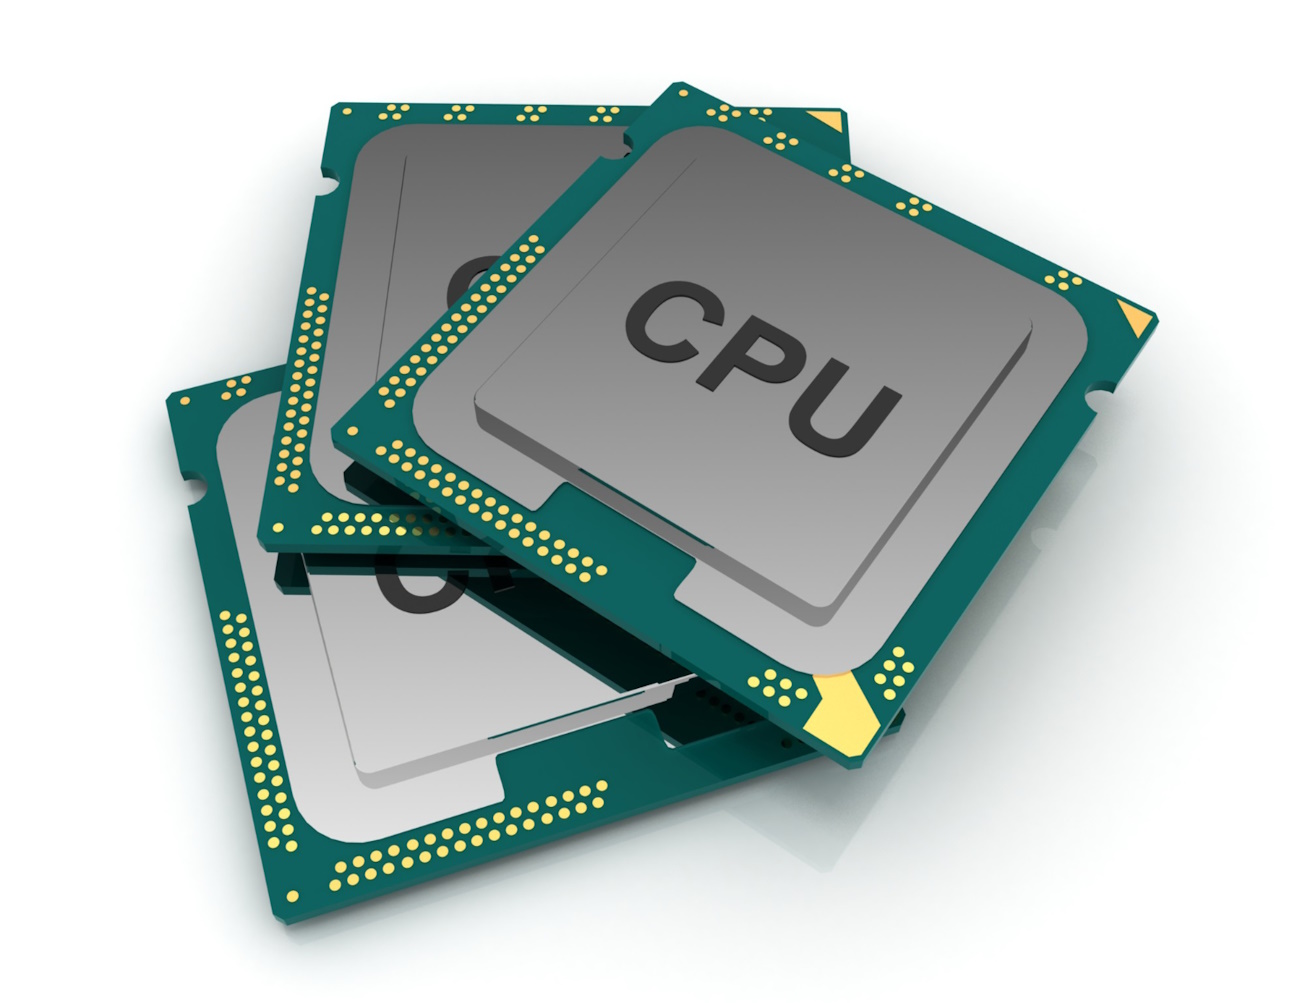 Spectre V2 afecta a sistemas Linux con CPU Intel